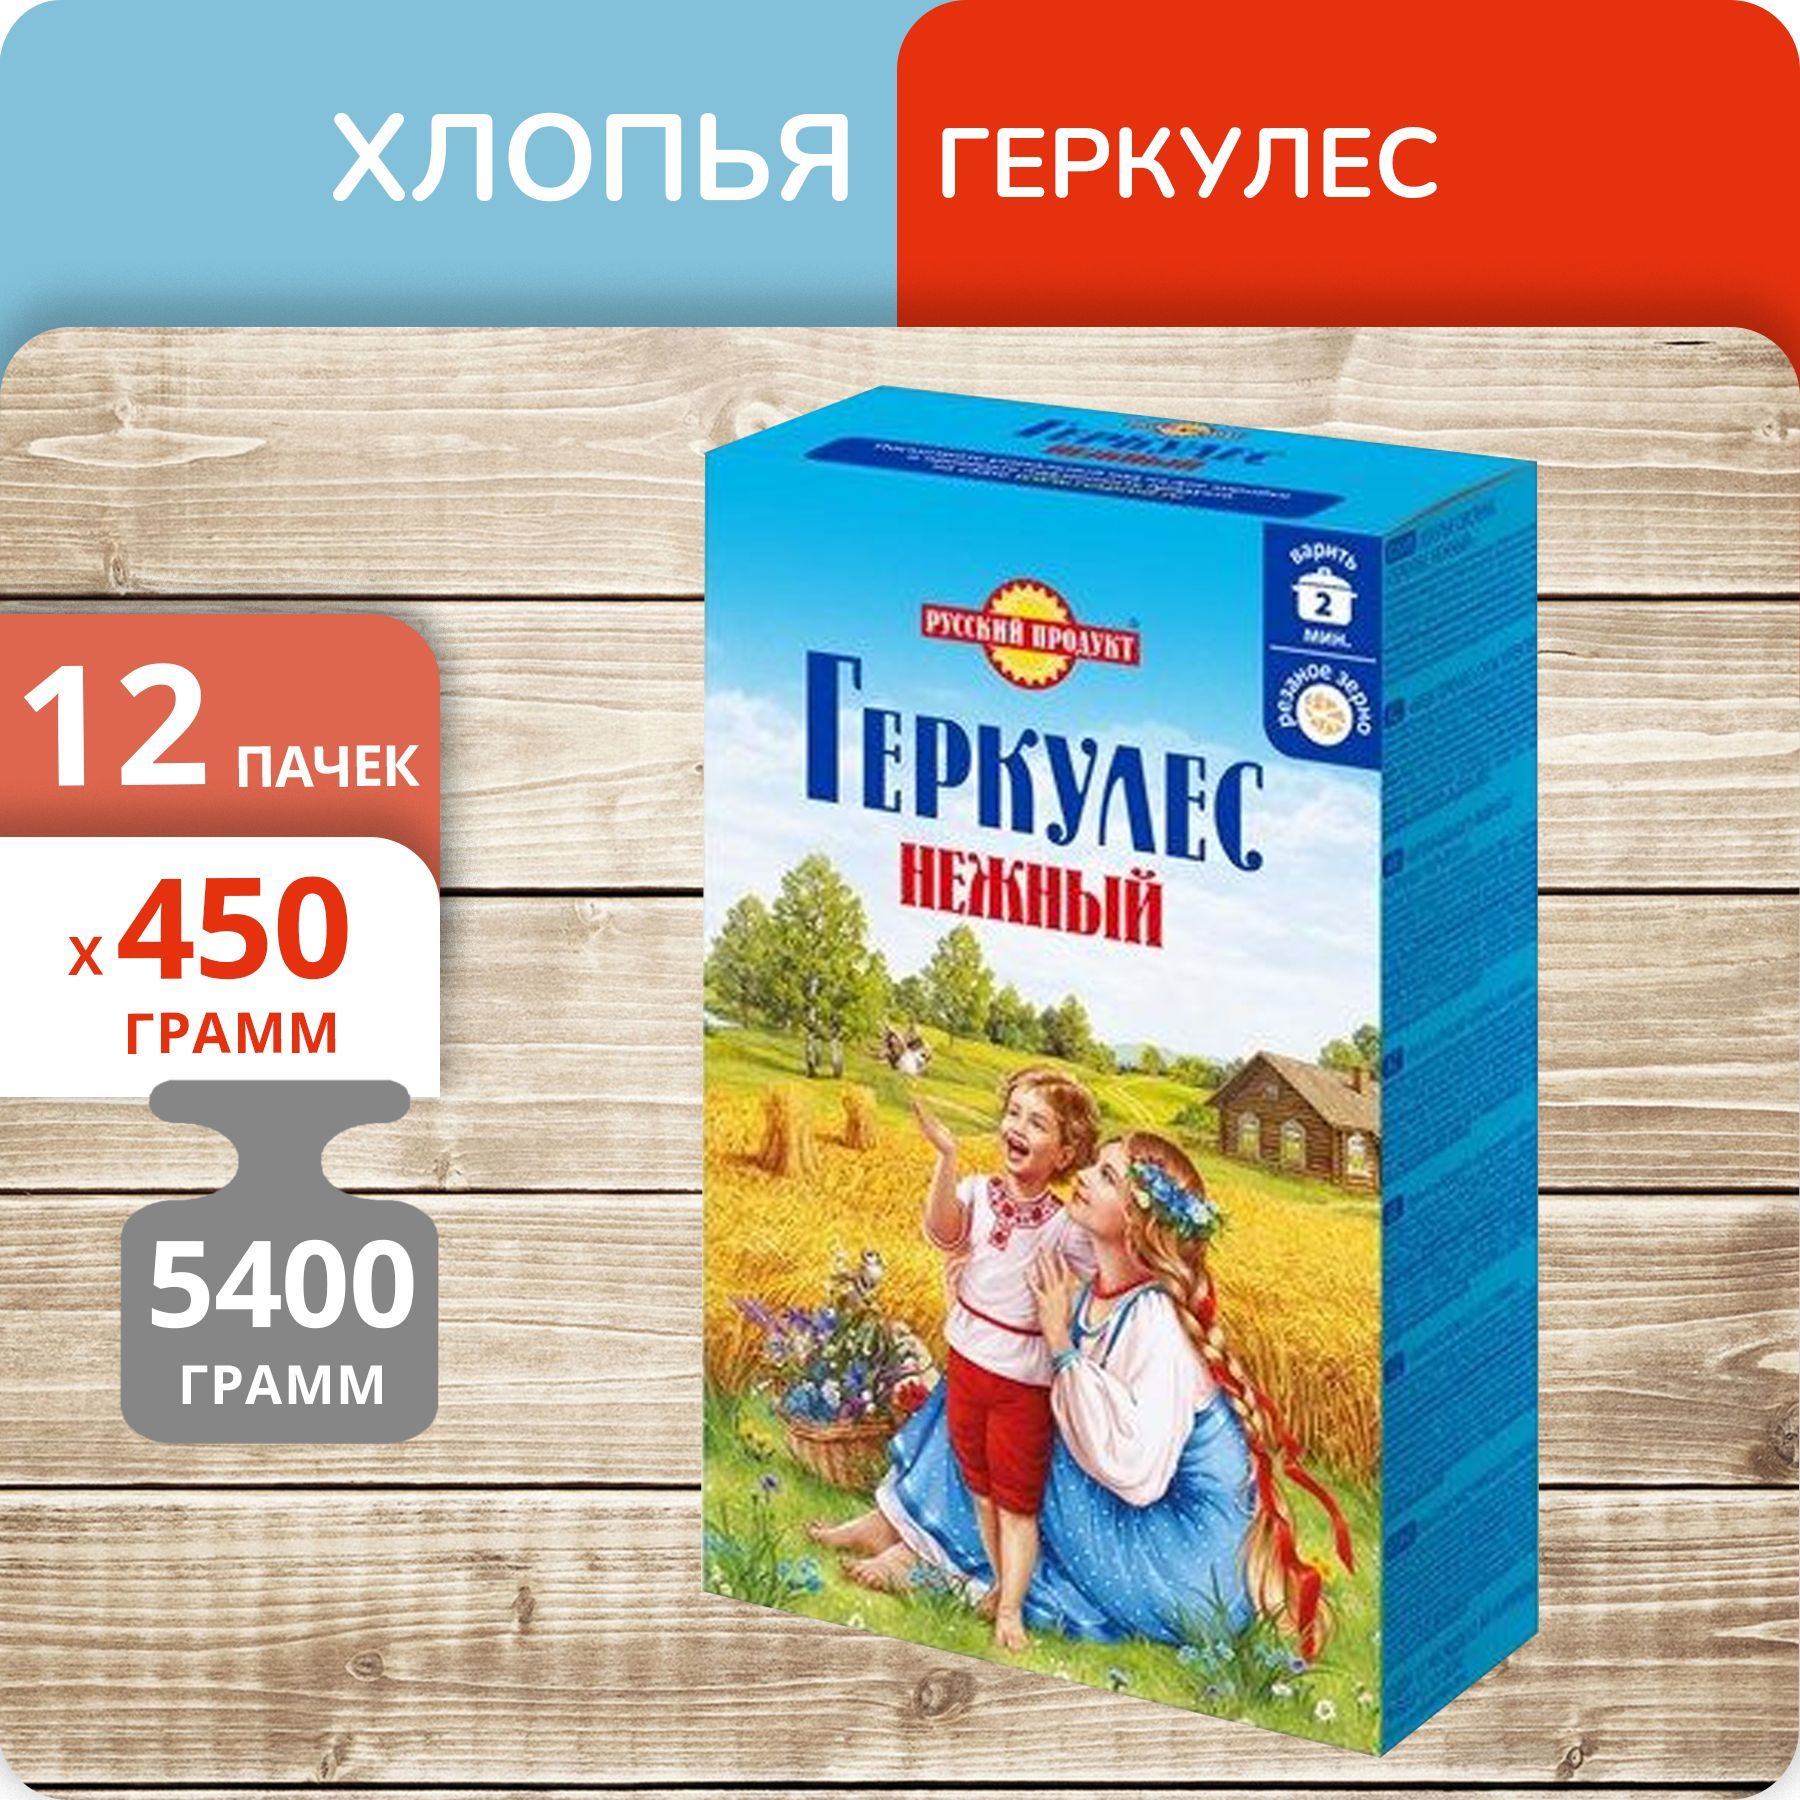 Геркулес Русский продукт Нежный овсяные хлопья, 450 г х 12 пачек